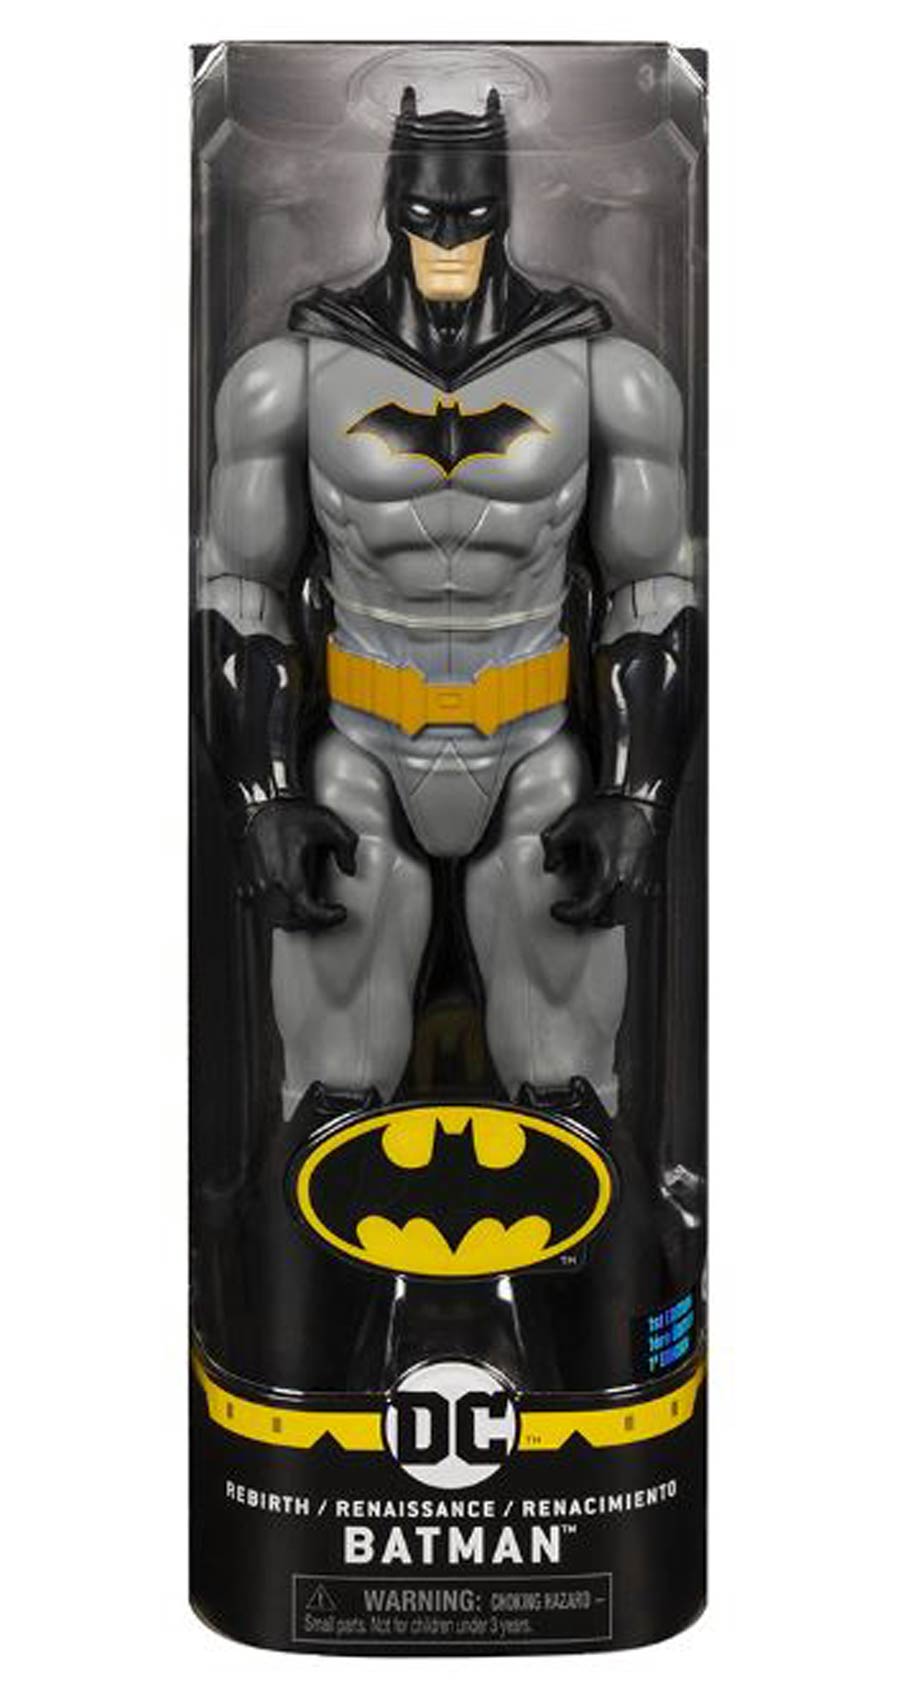 Batman 12-Inch Action Figure Assortment 202001 - Batman Rebirth